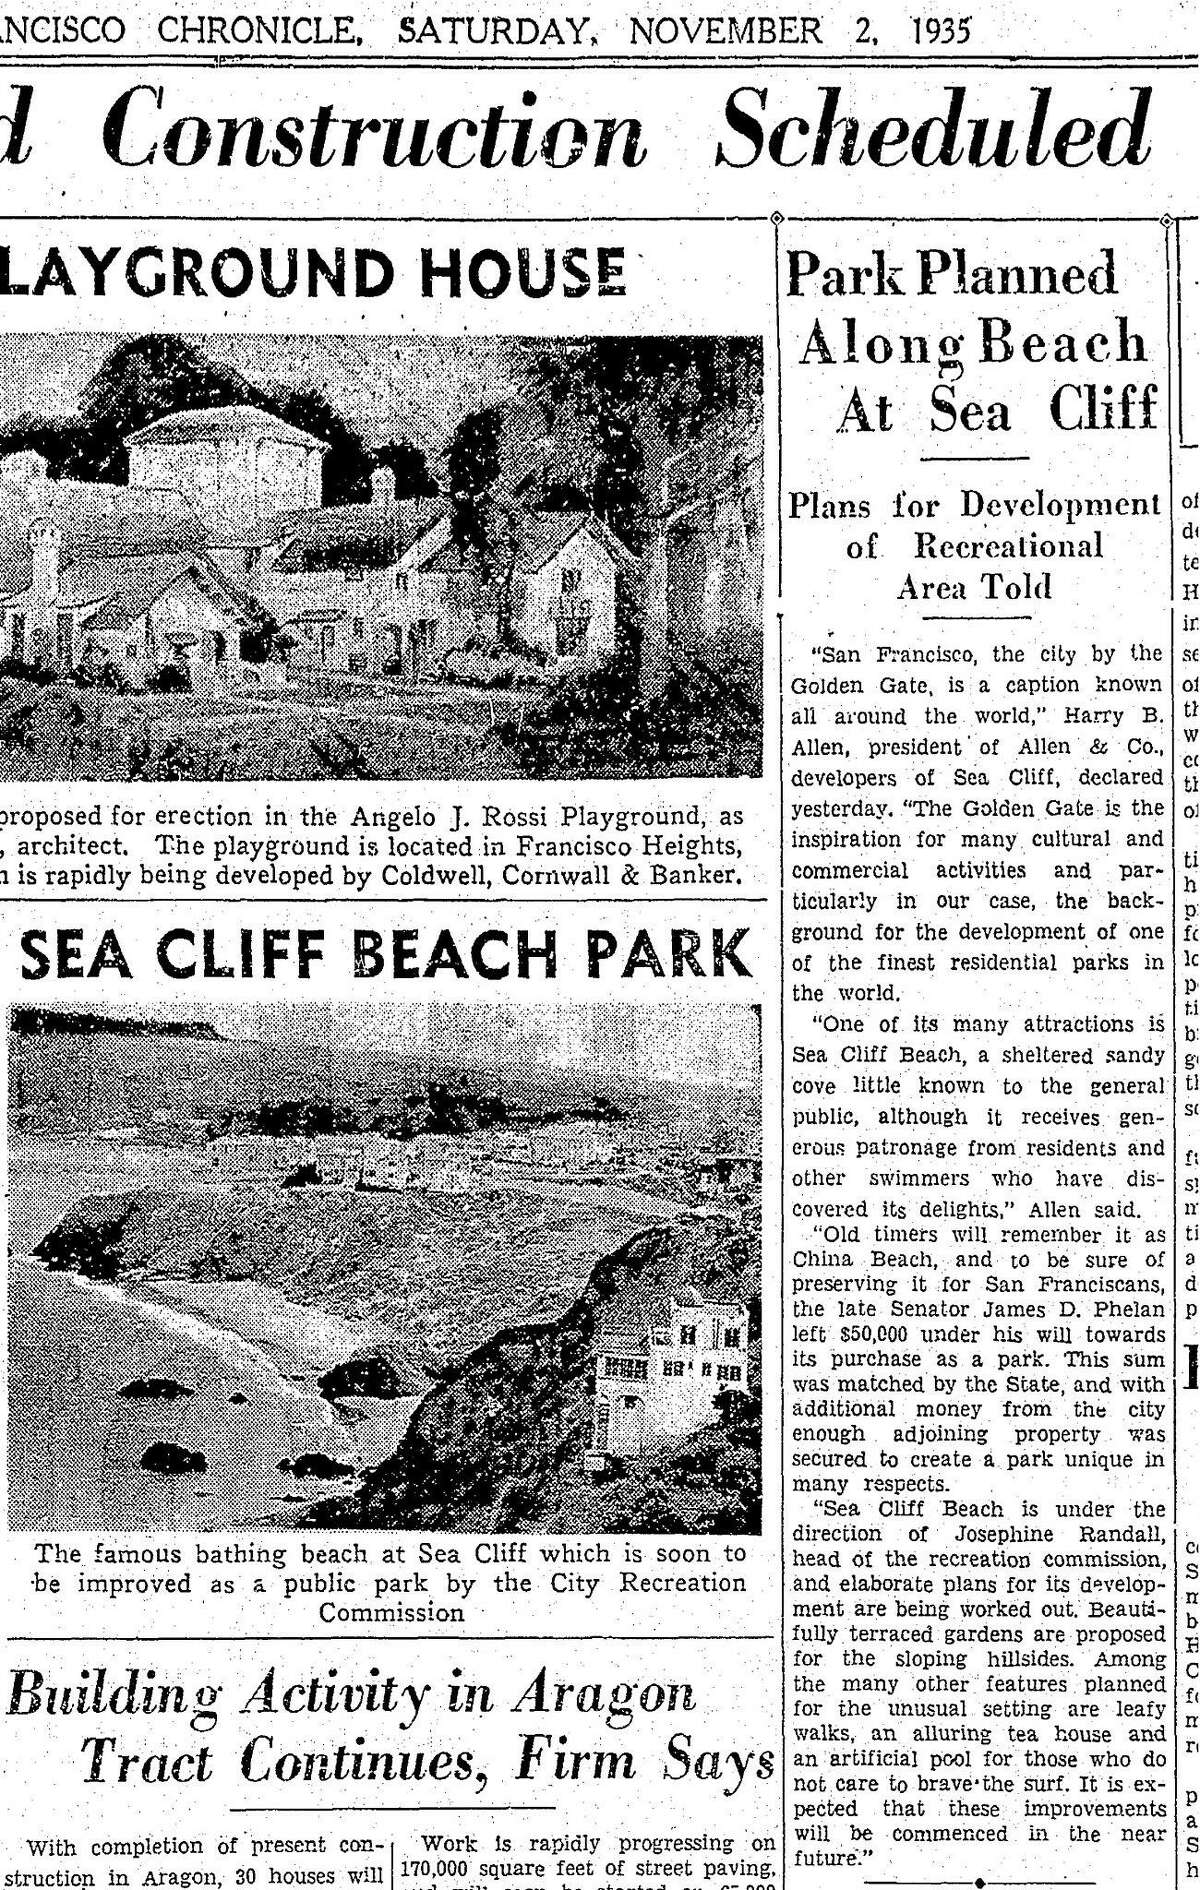 1935年11月2日，旧金山，一篇纪事报关于计划改善中国海滩的文章